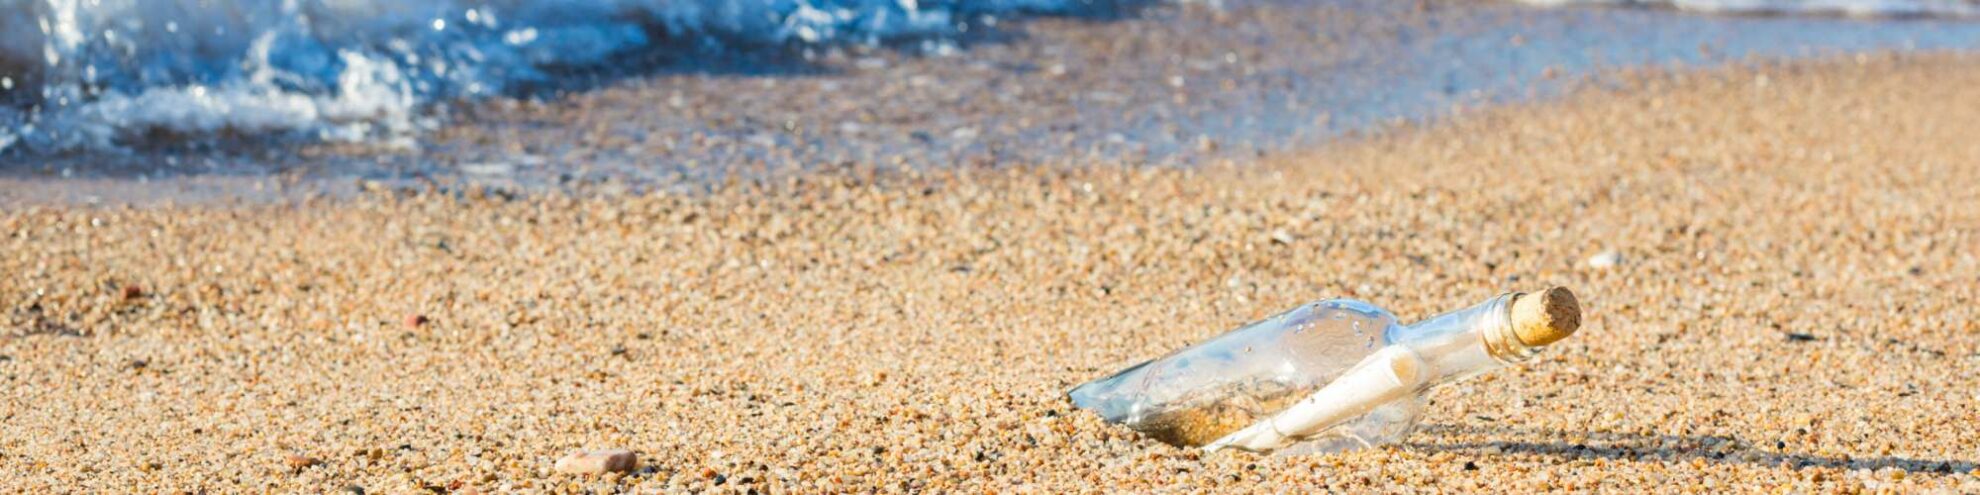 Eine Flaschenpost am Strand. Im Hintergrund das Meer